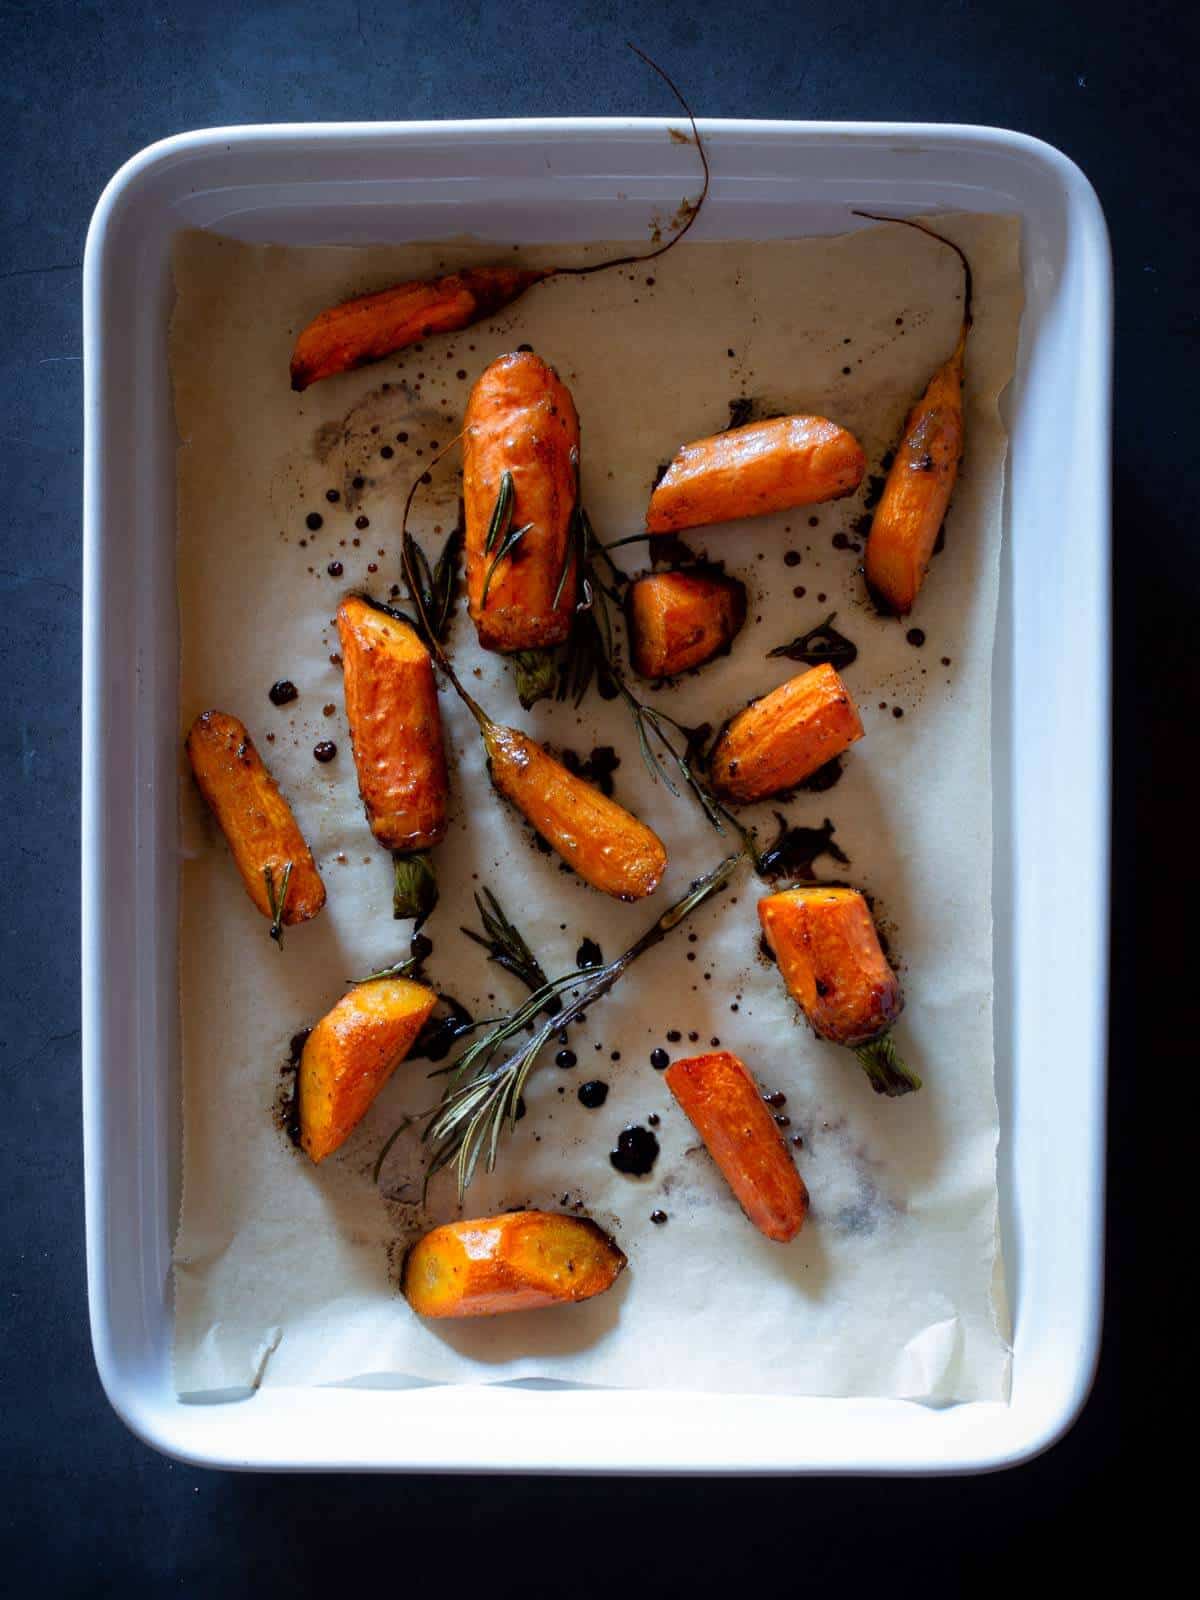 miso glazed carrots recipe